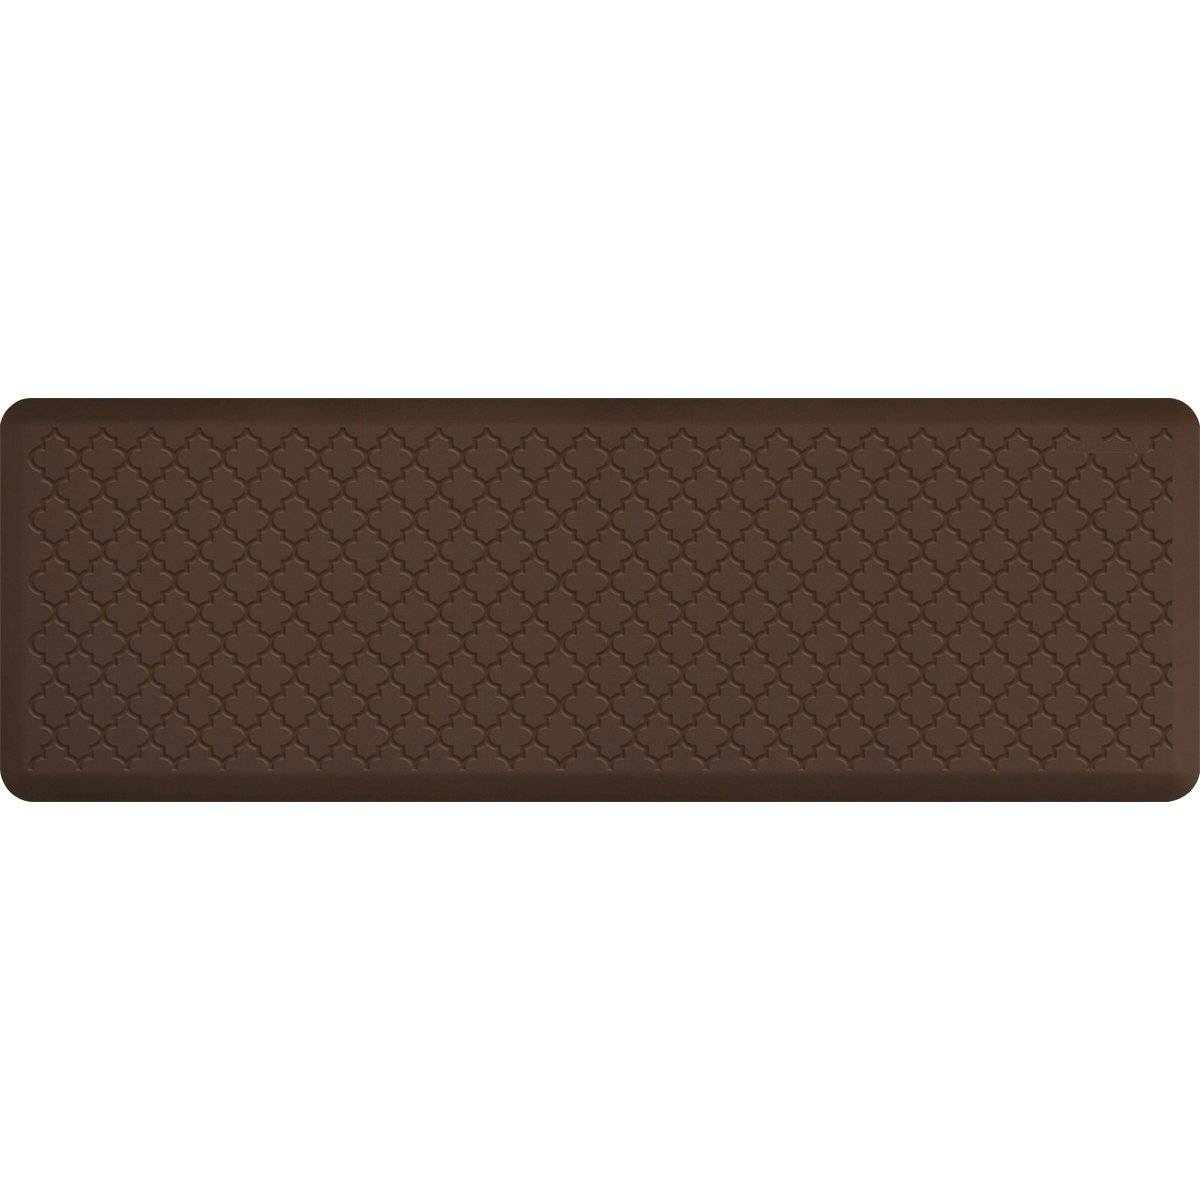 WellnessMats Trellis Motif 6' X 2' MT62WMRBRN, Brown A popular floor mat with elegant design. A kitchen mat that gives padded support.